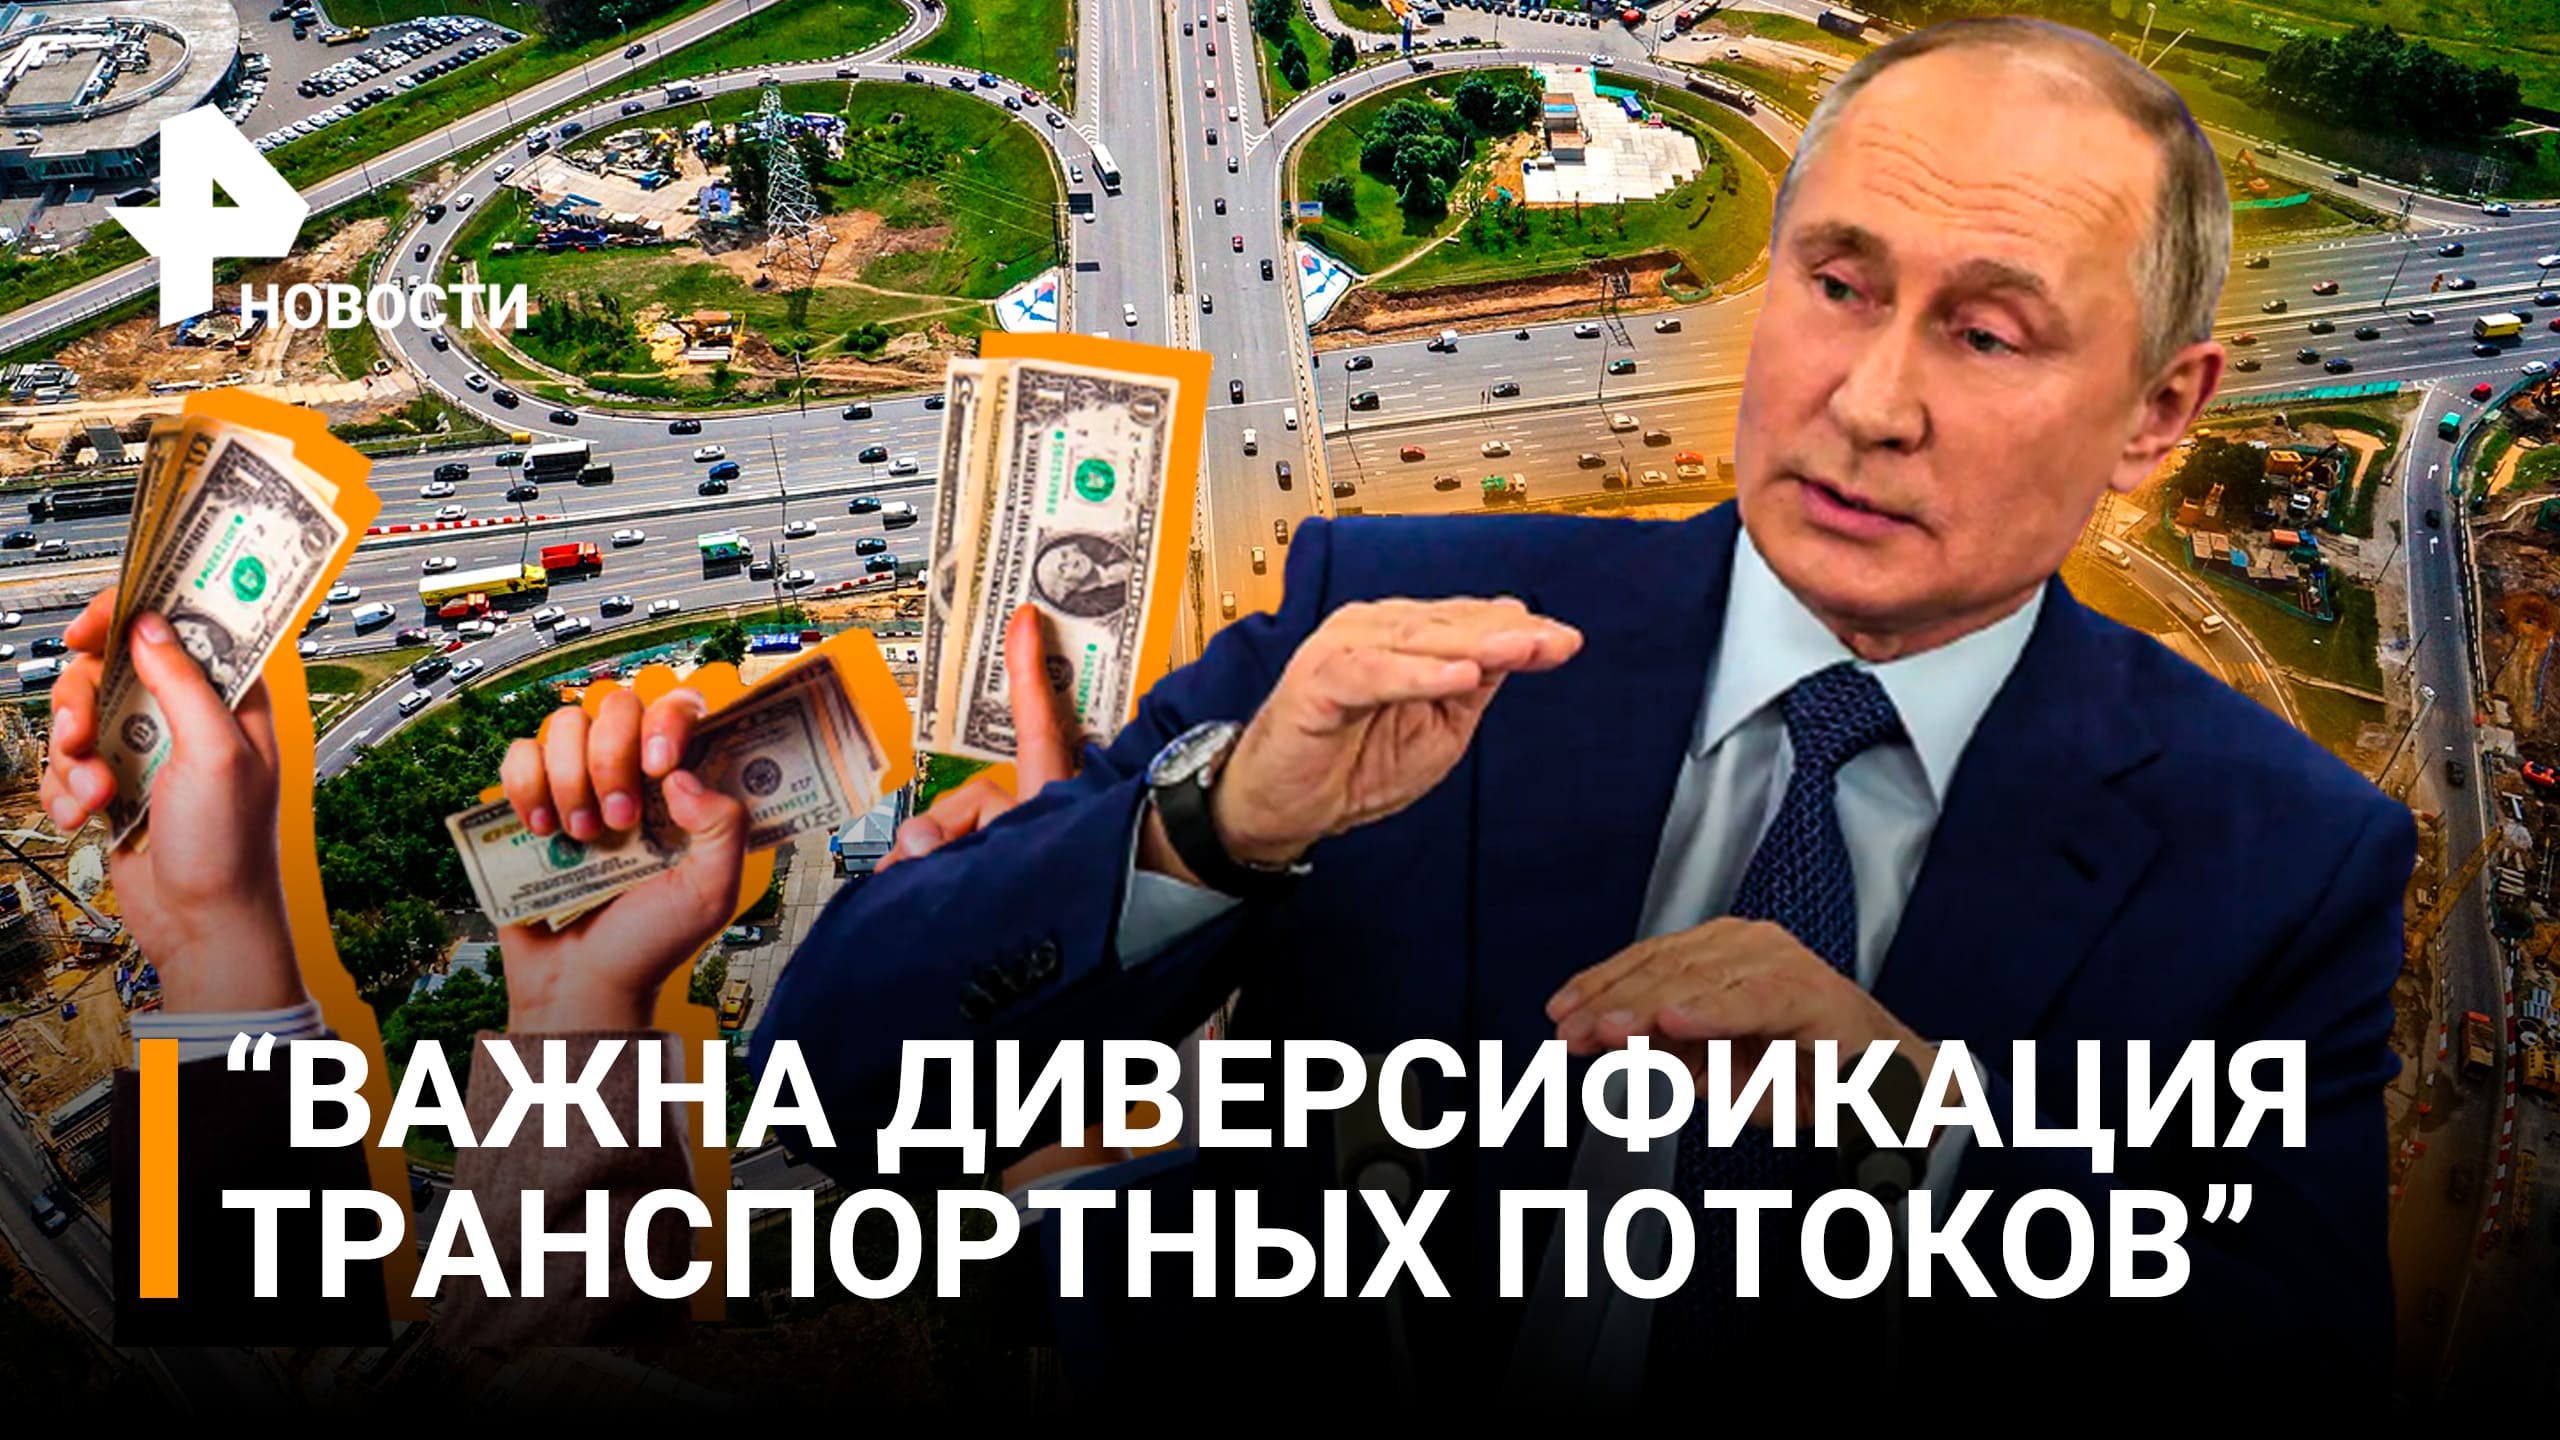 Путин: важна диверсификация транспортных потоков / РЕН Новости